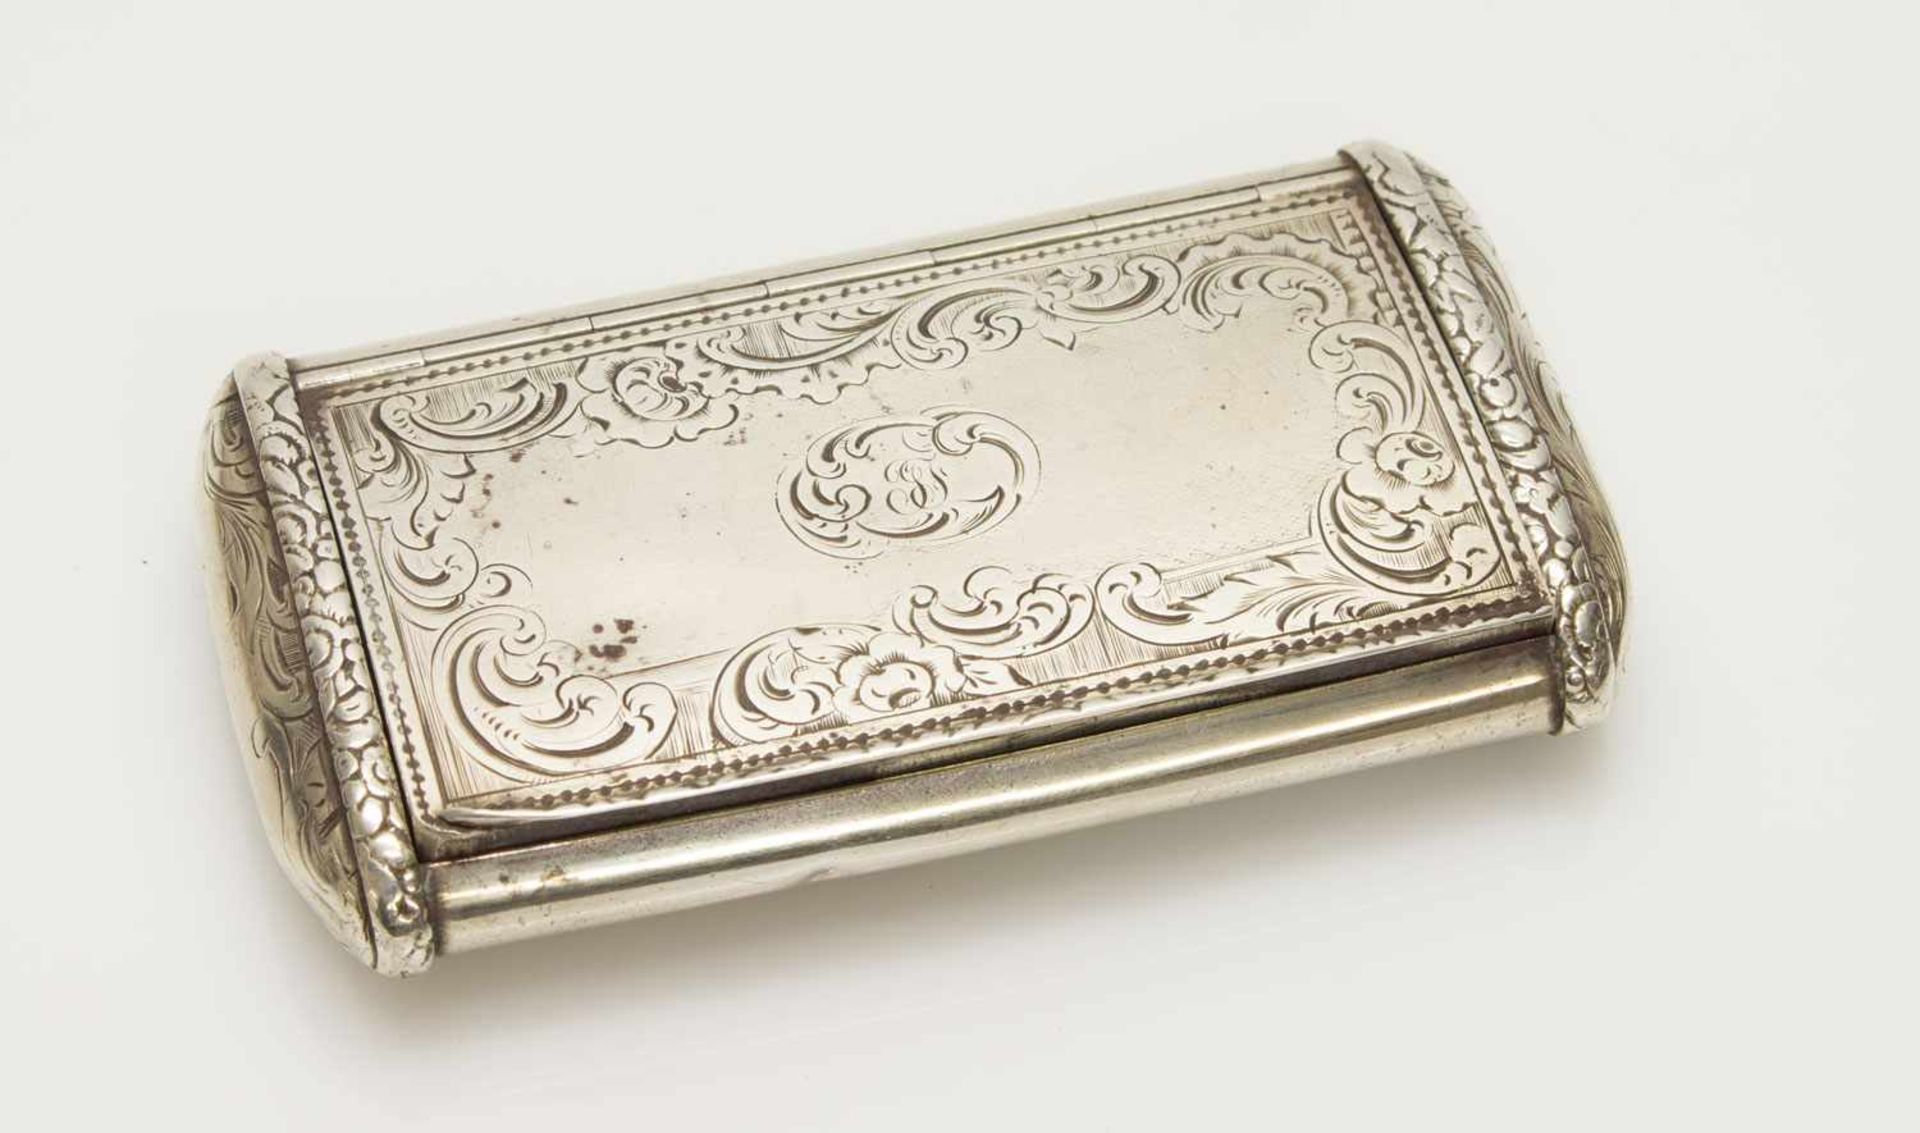 Tabakdosewohl Frankreich um 1800, Silber, mit scharniertem Deckel, undeutlich gemarkt, 9 x 5 cm